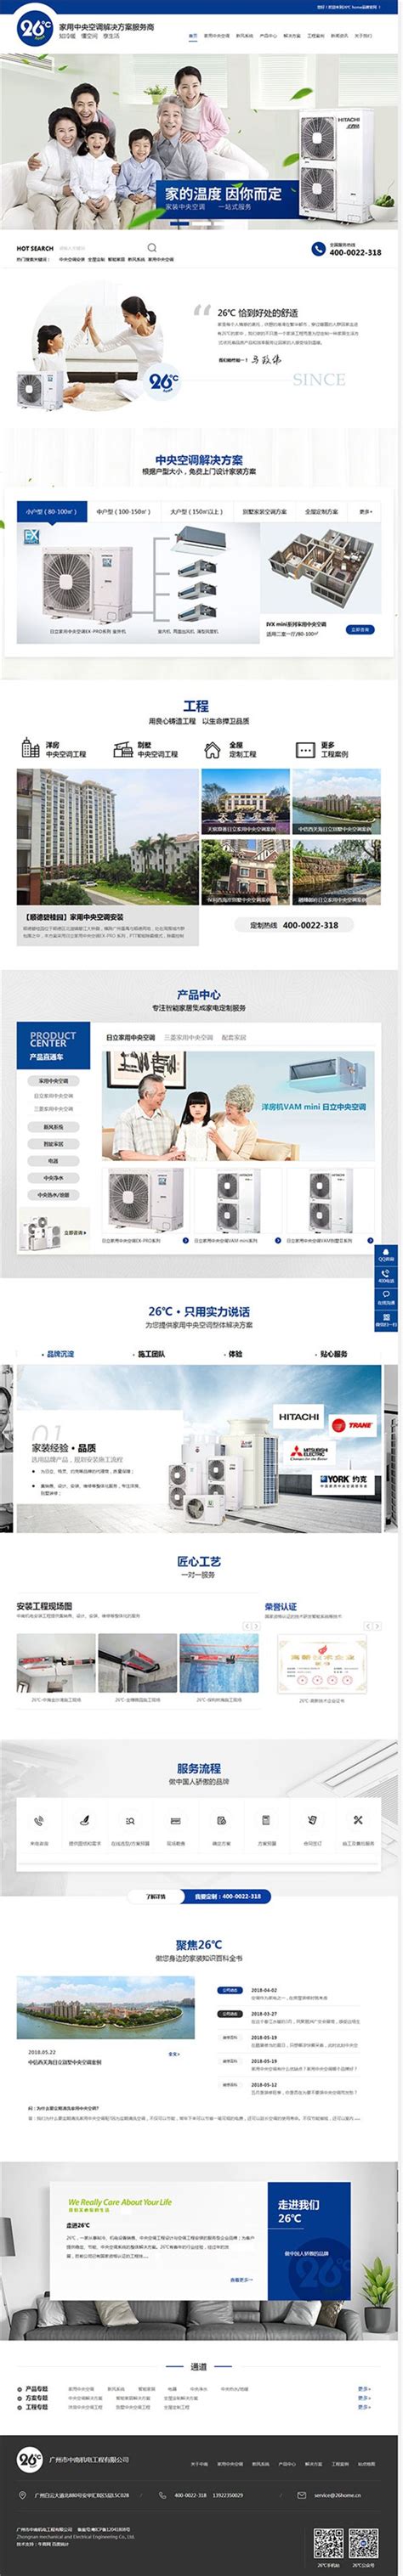 牛商网营销型网站制作案例展示-广州中南机电工程